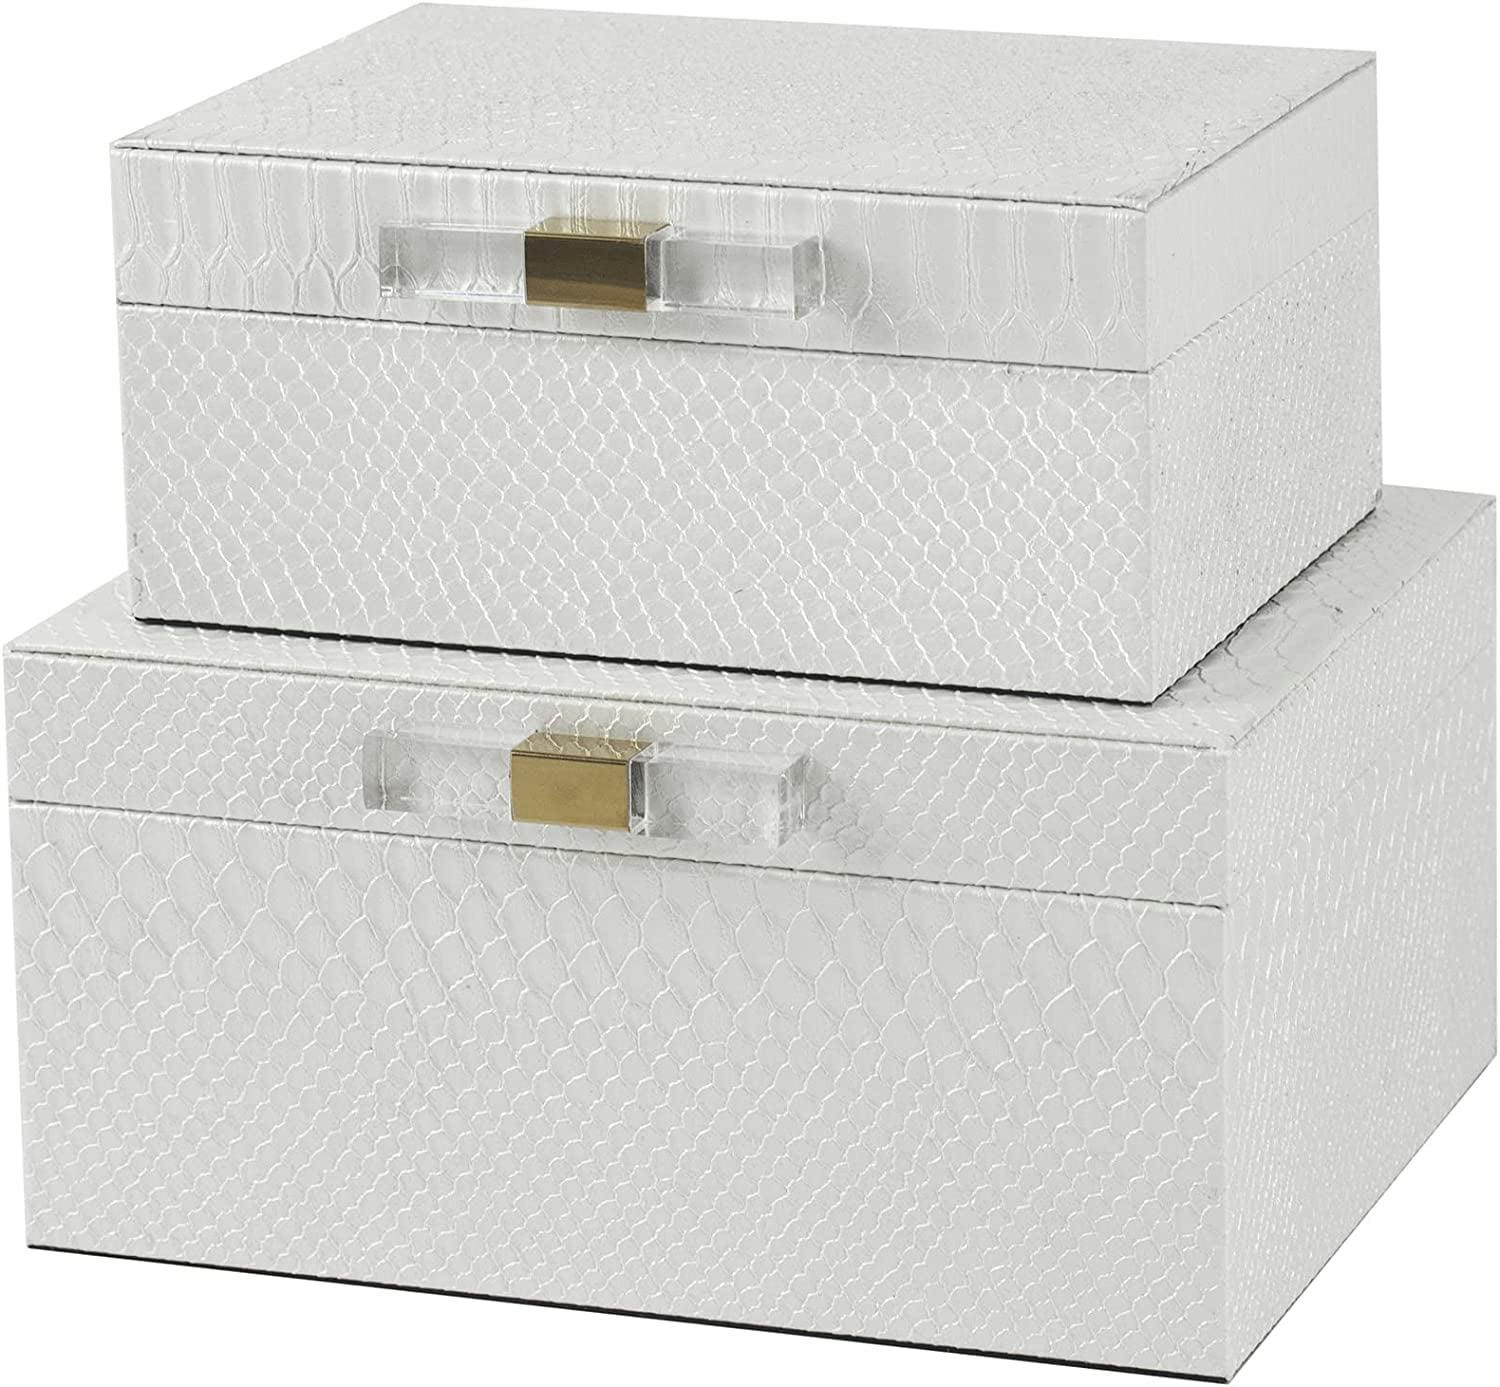 Glamorous White Faux Snakeskin Decorative Lidded Box Set